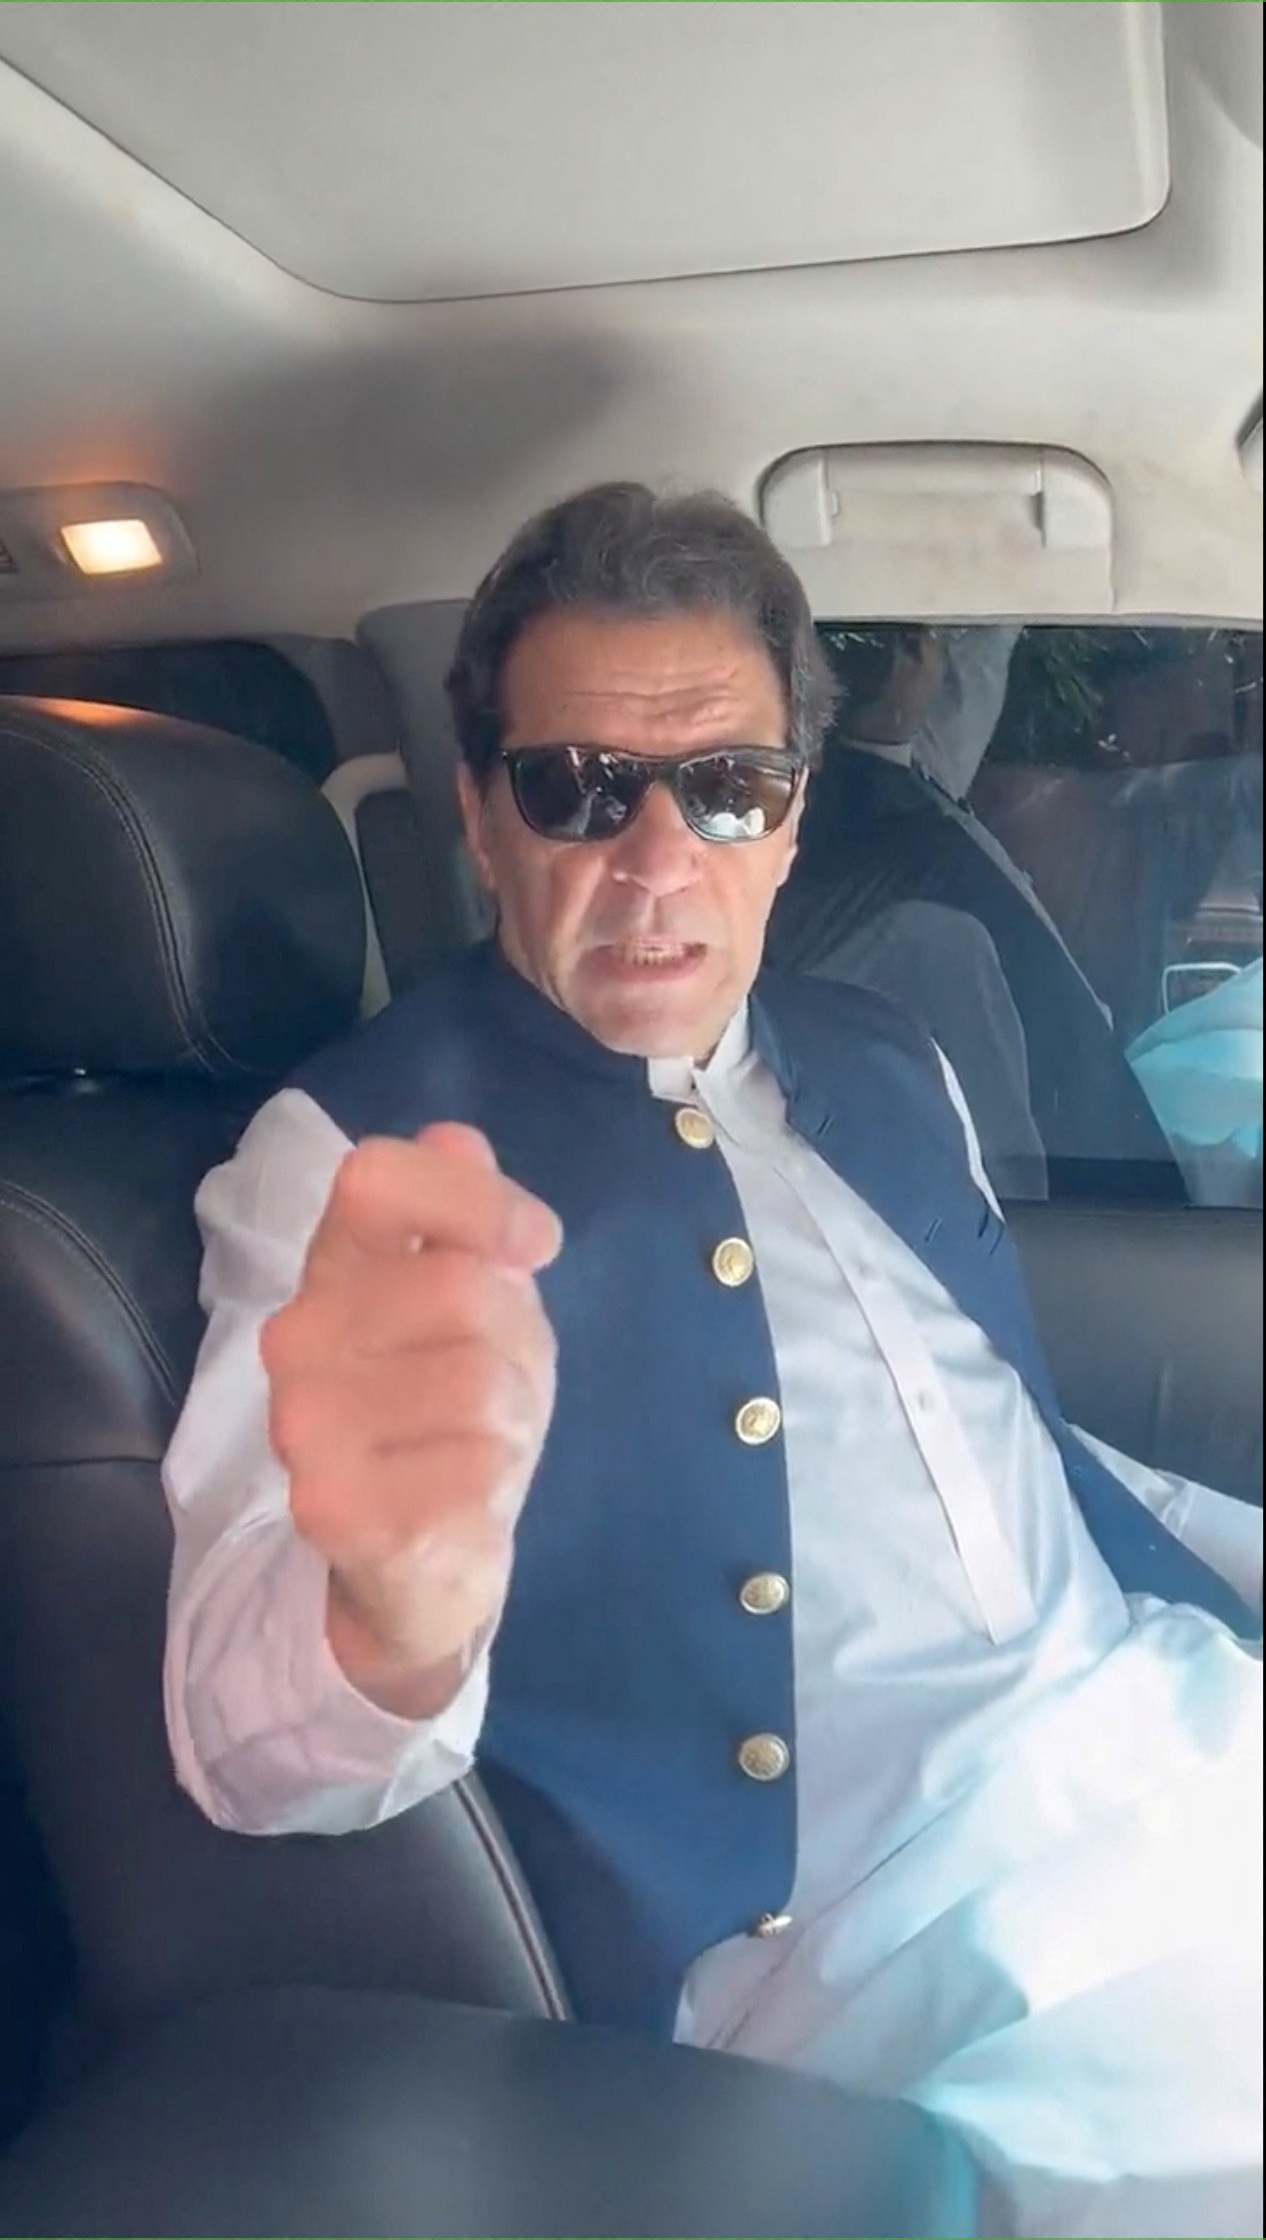 El mensaje de Khan a sus partidarios (Imran Khan/Twitter/REUTERS)